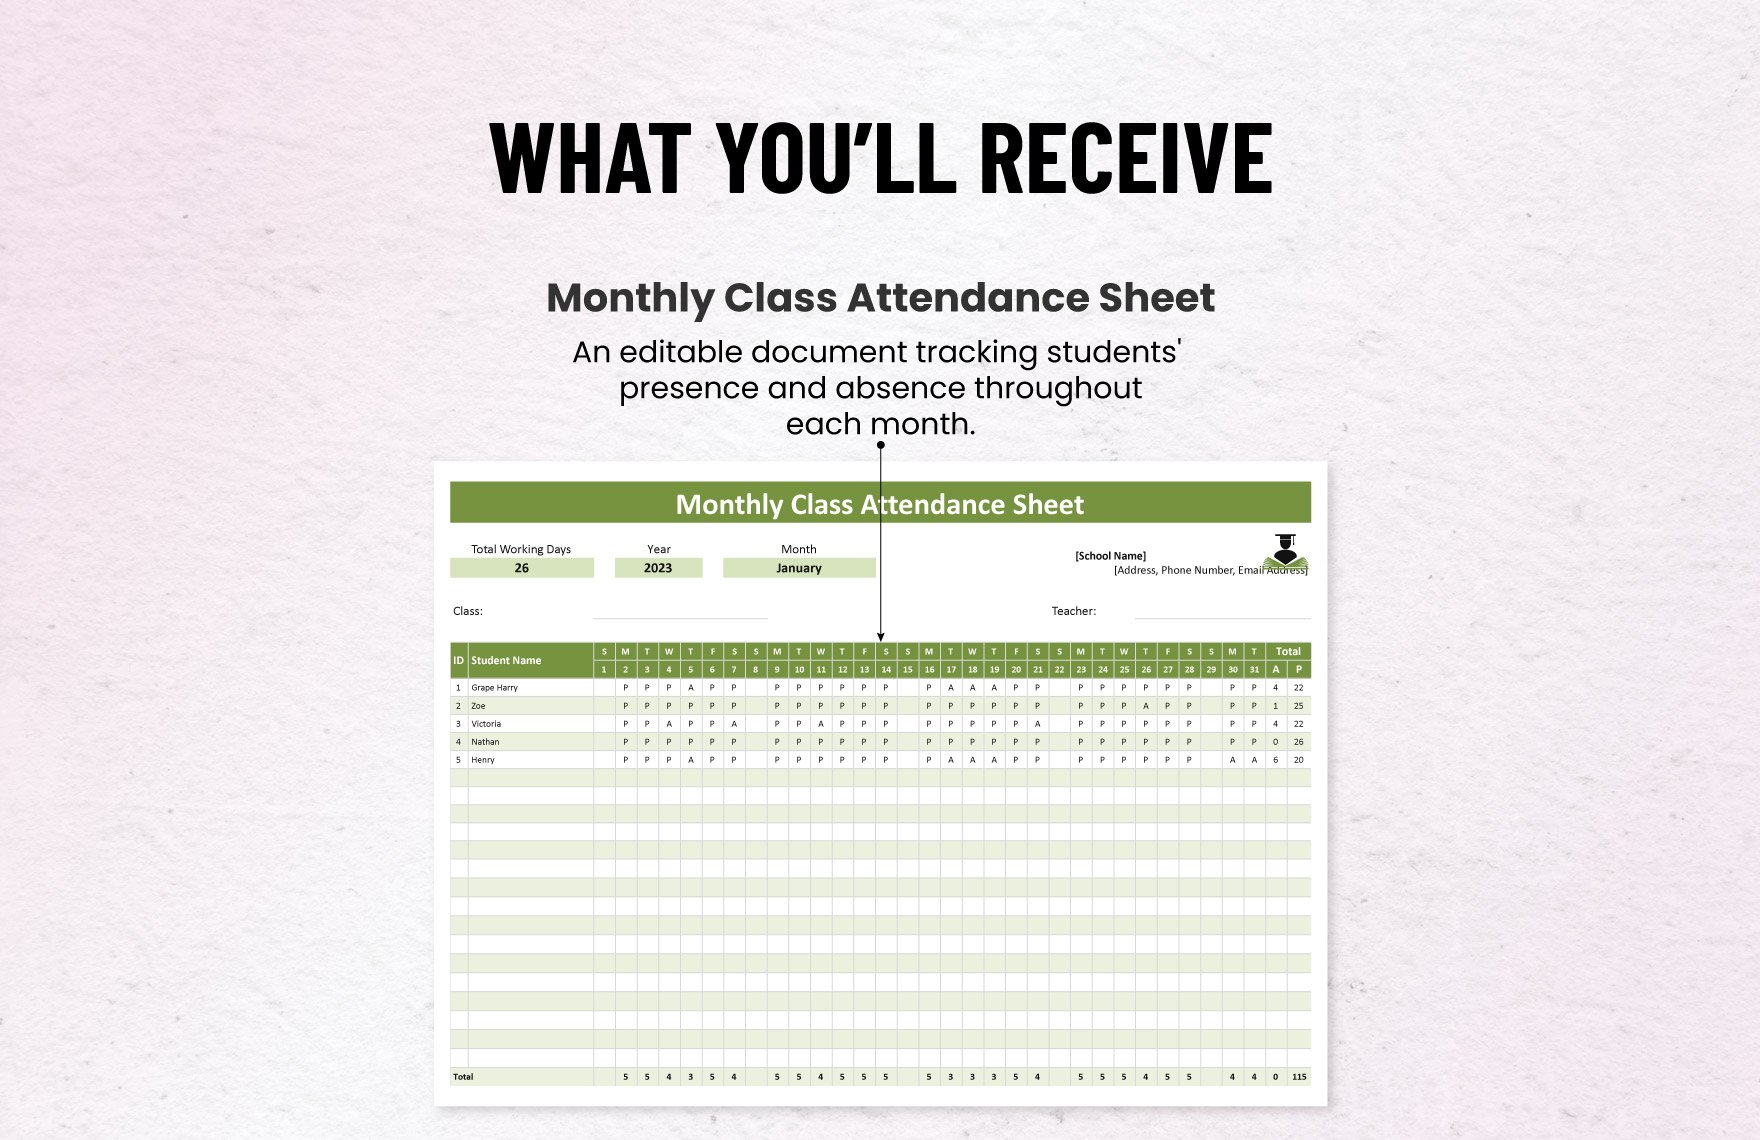 Monthly Class Attendance Sheet Template